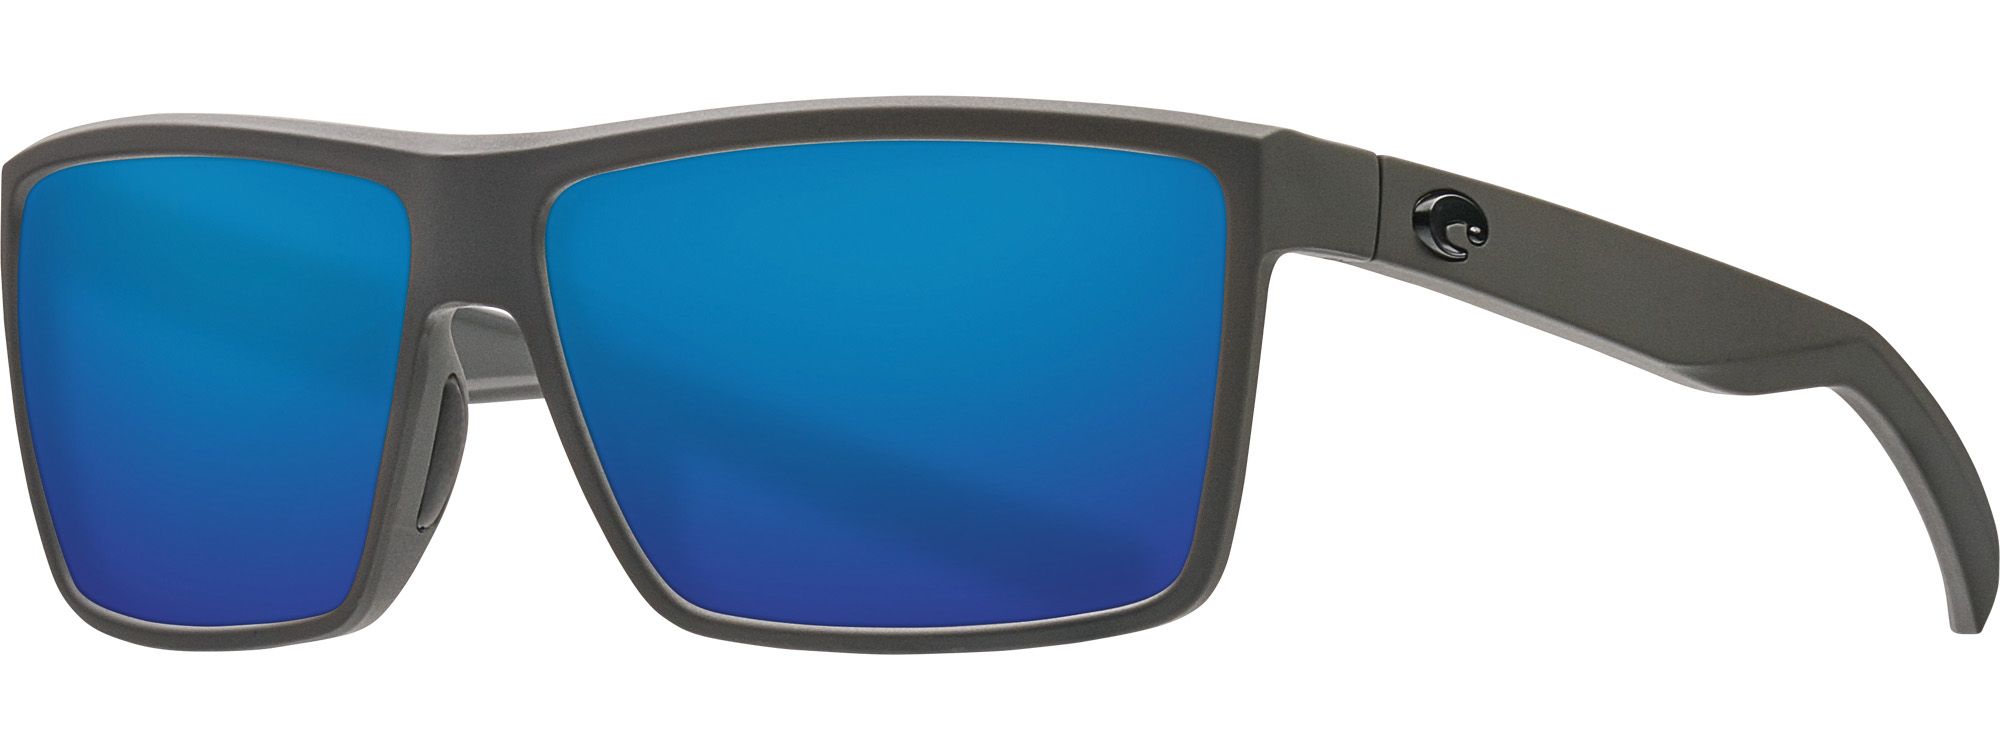 Photos - Sunglasses Costa Del Mar Rinconcito 580G Polarized , Men's, Matte Gray/Blue 